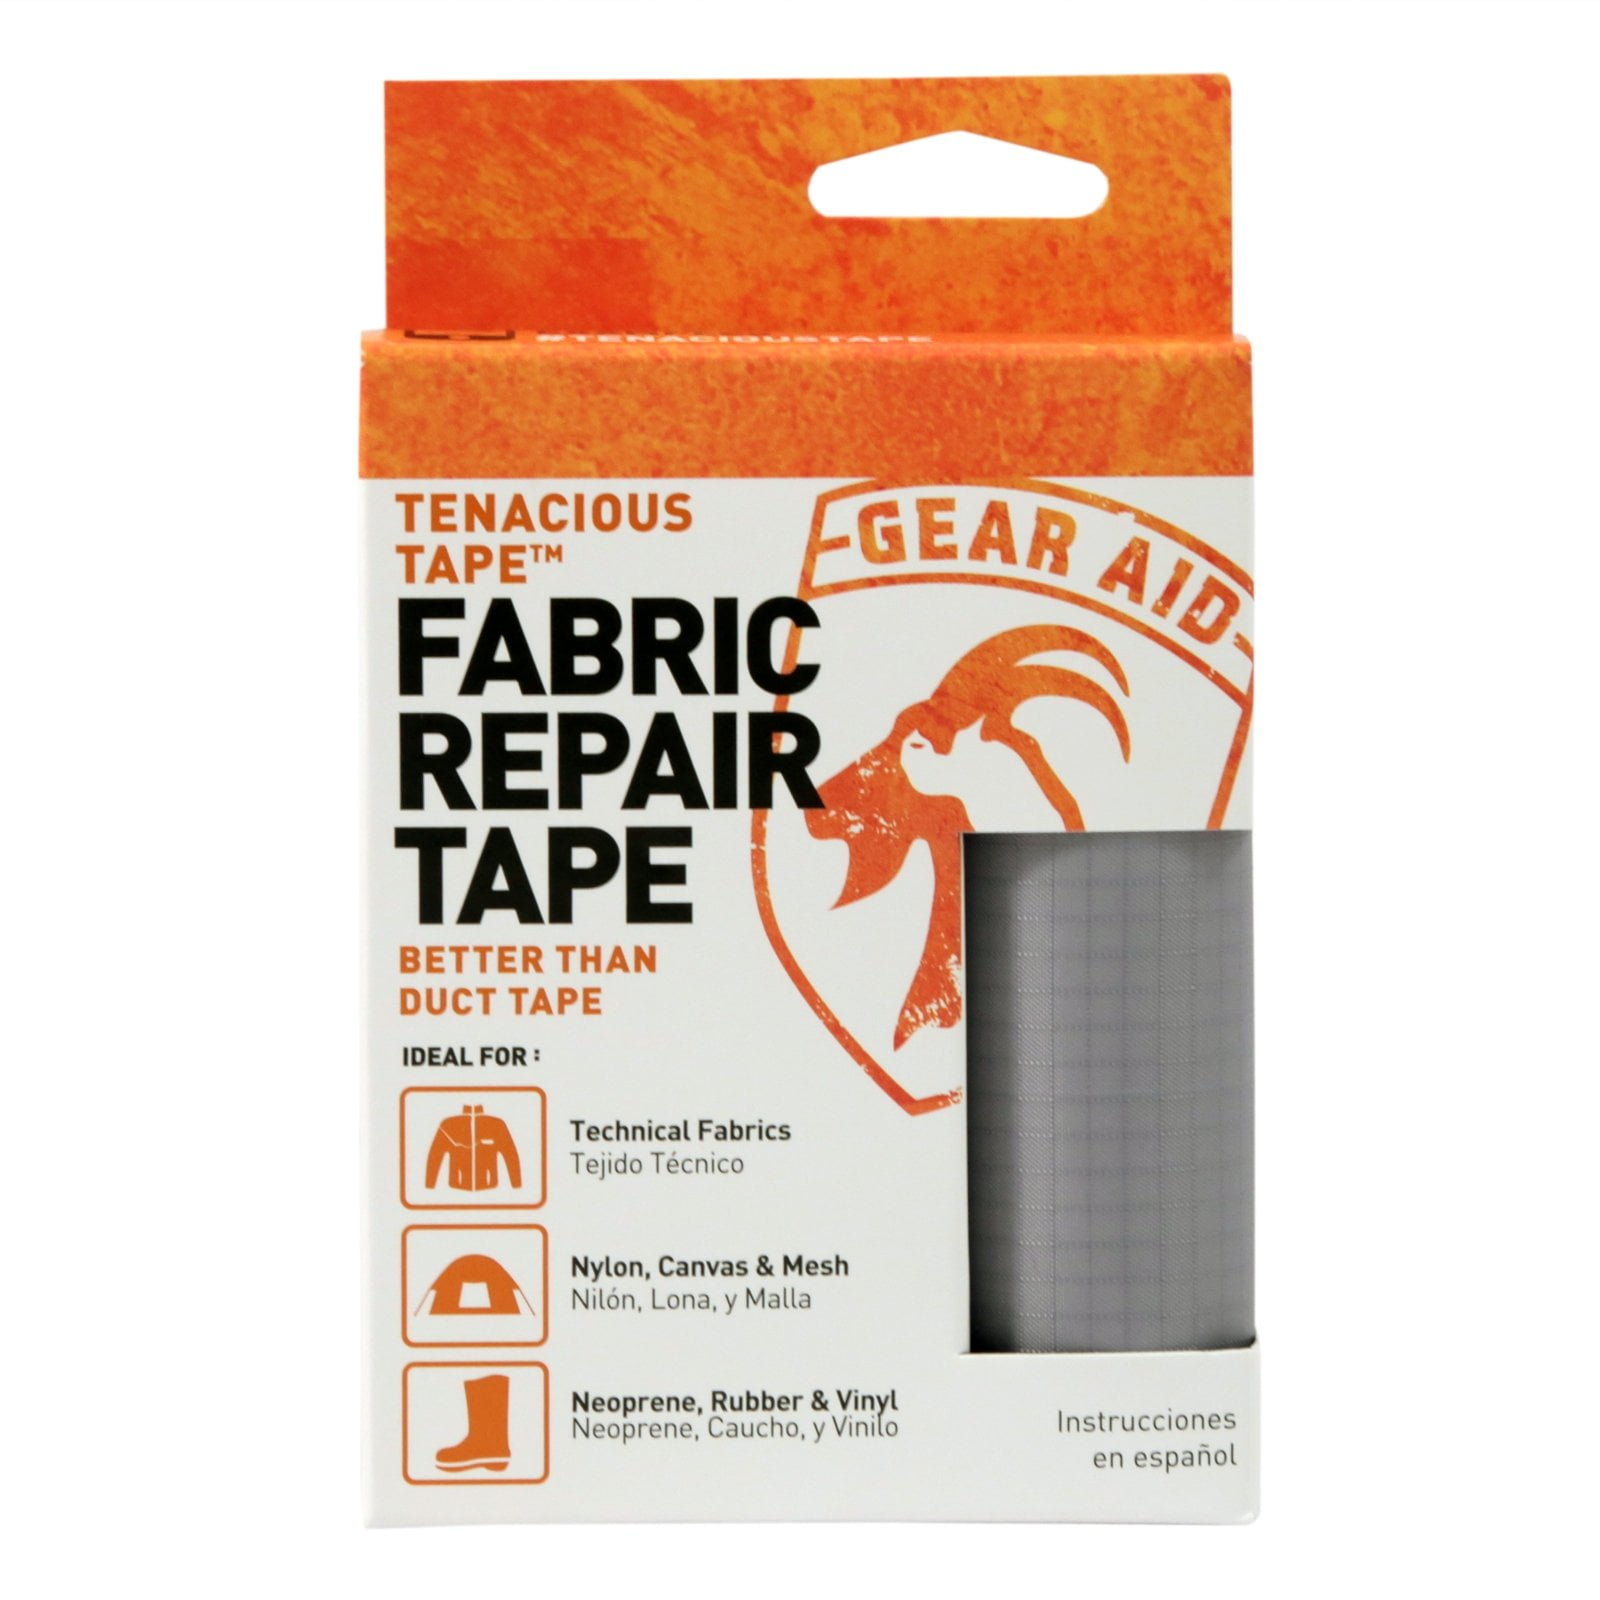 Tenacious Tape Ultra Strong Flexible Fabric Tent Gear Repairs Fix